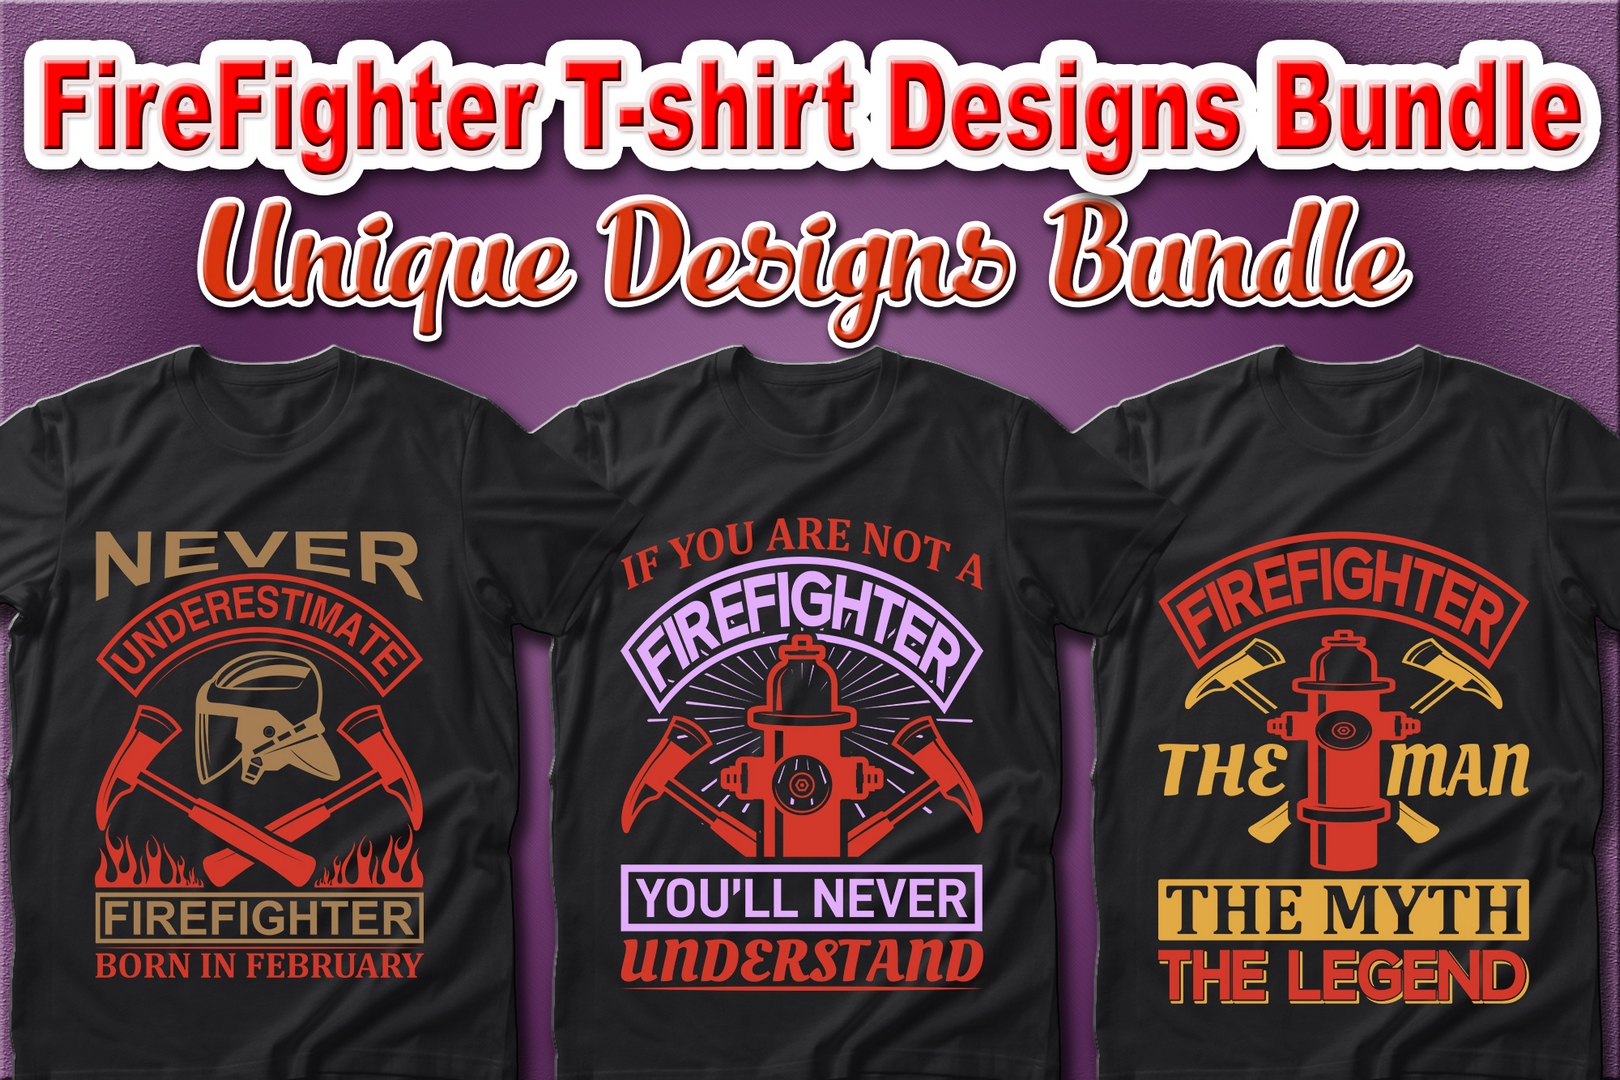 100-firefighter-t-shirt-designs-bundle